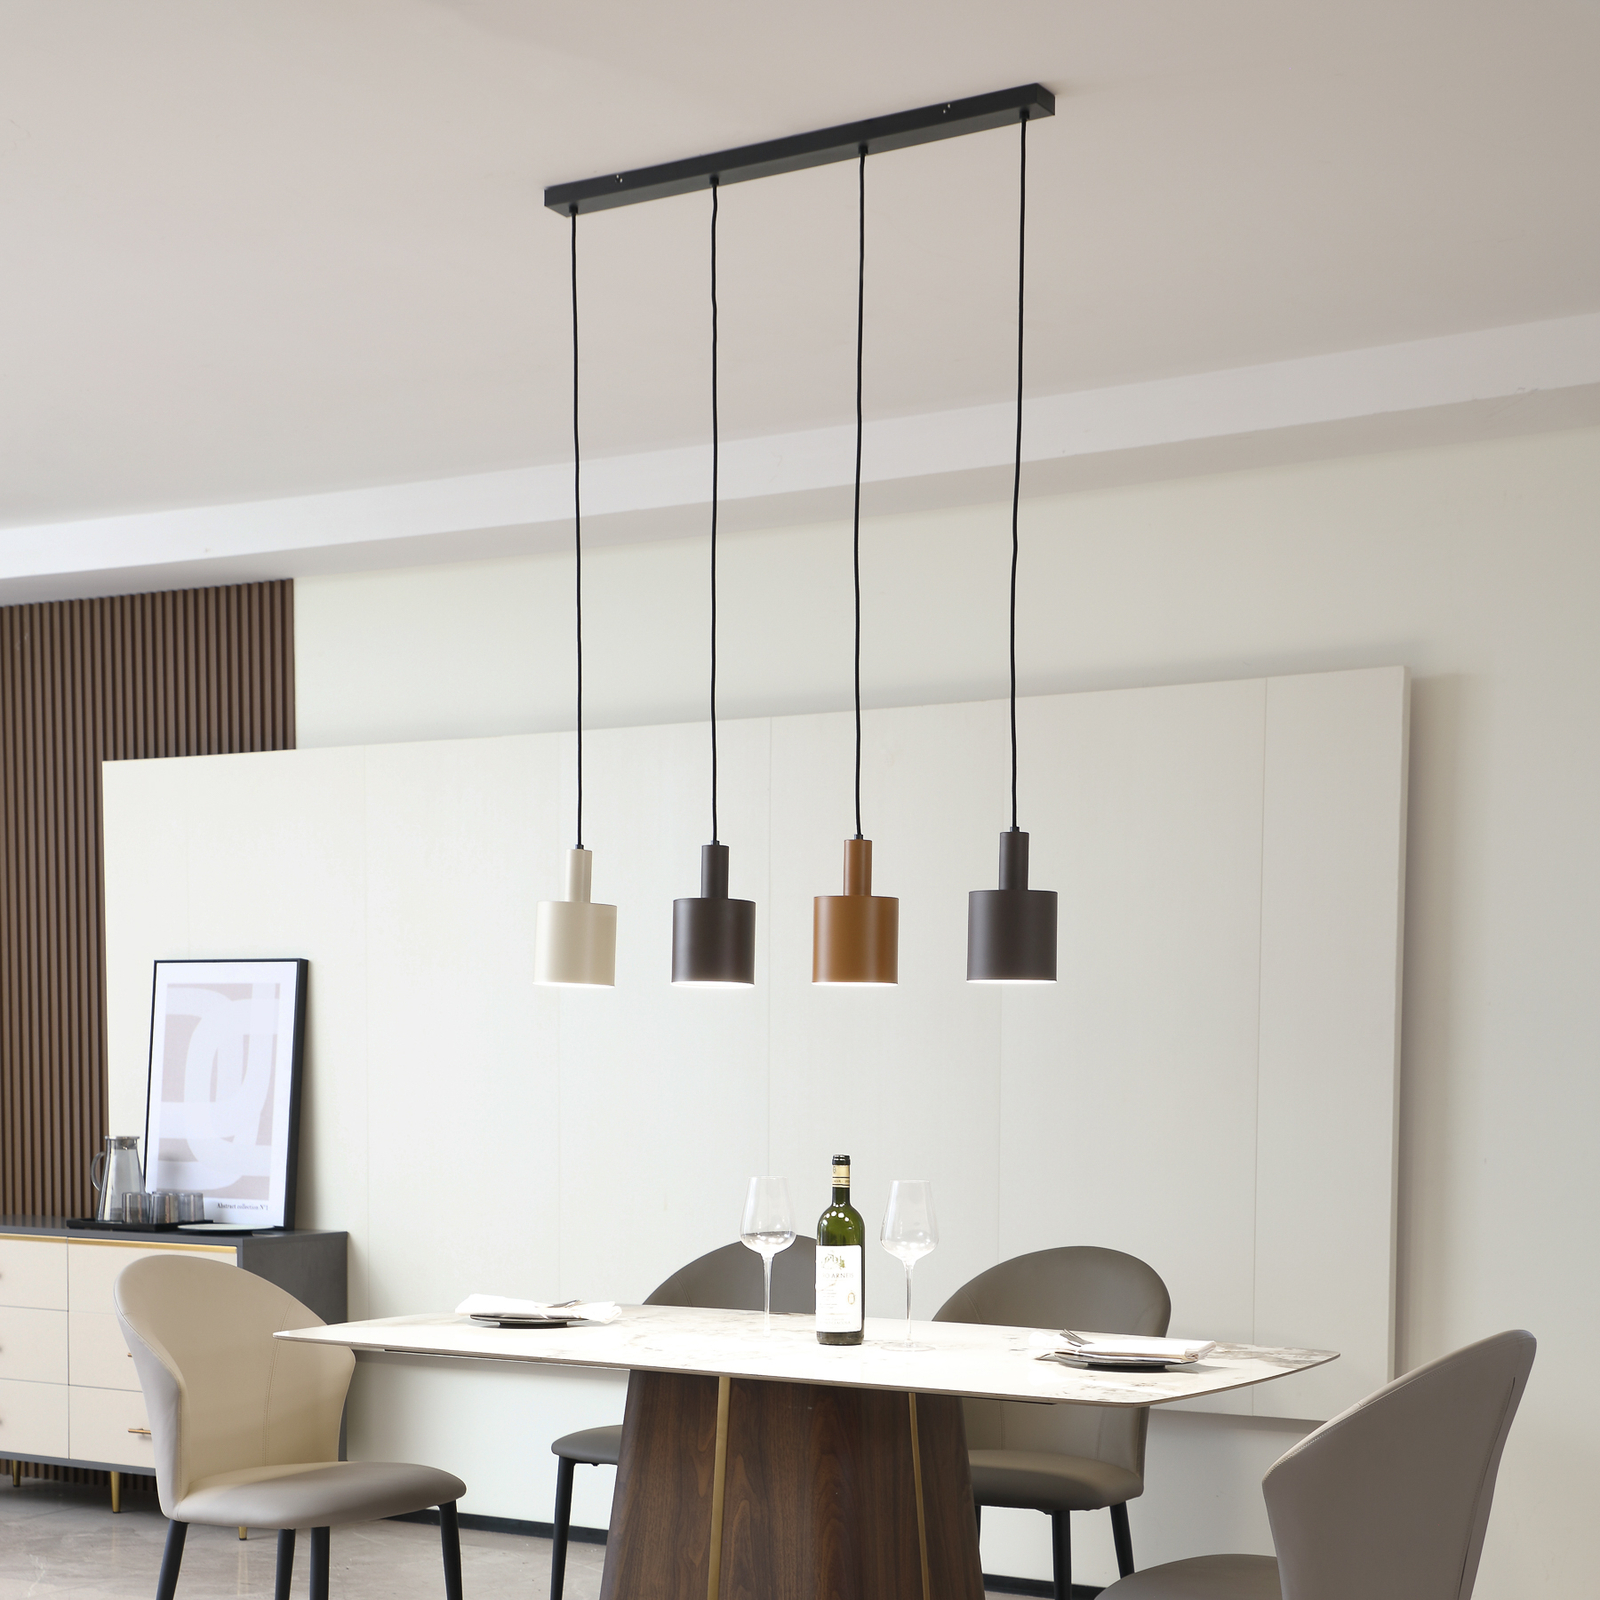 Lindby hanglamp Ovelia, zwart/bruin/beige, 4-lamps, ijzer